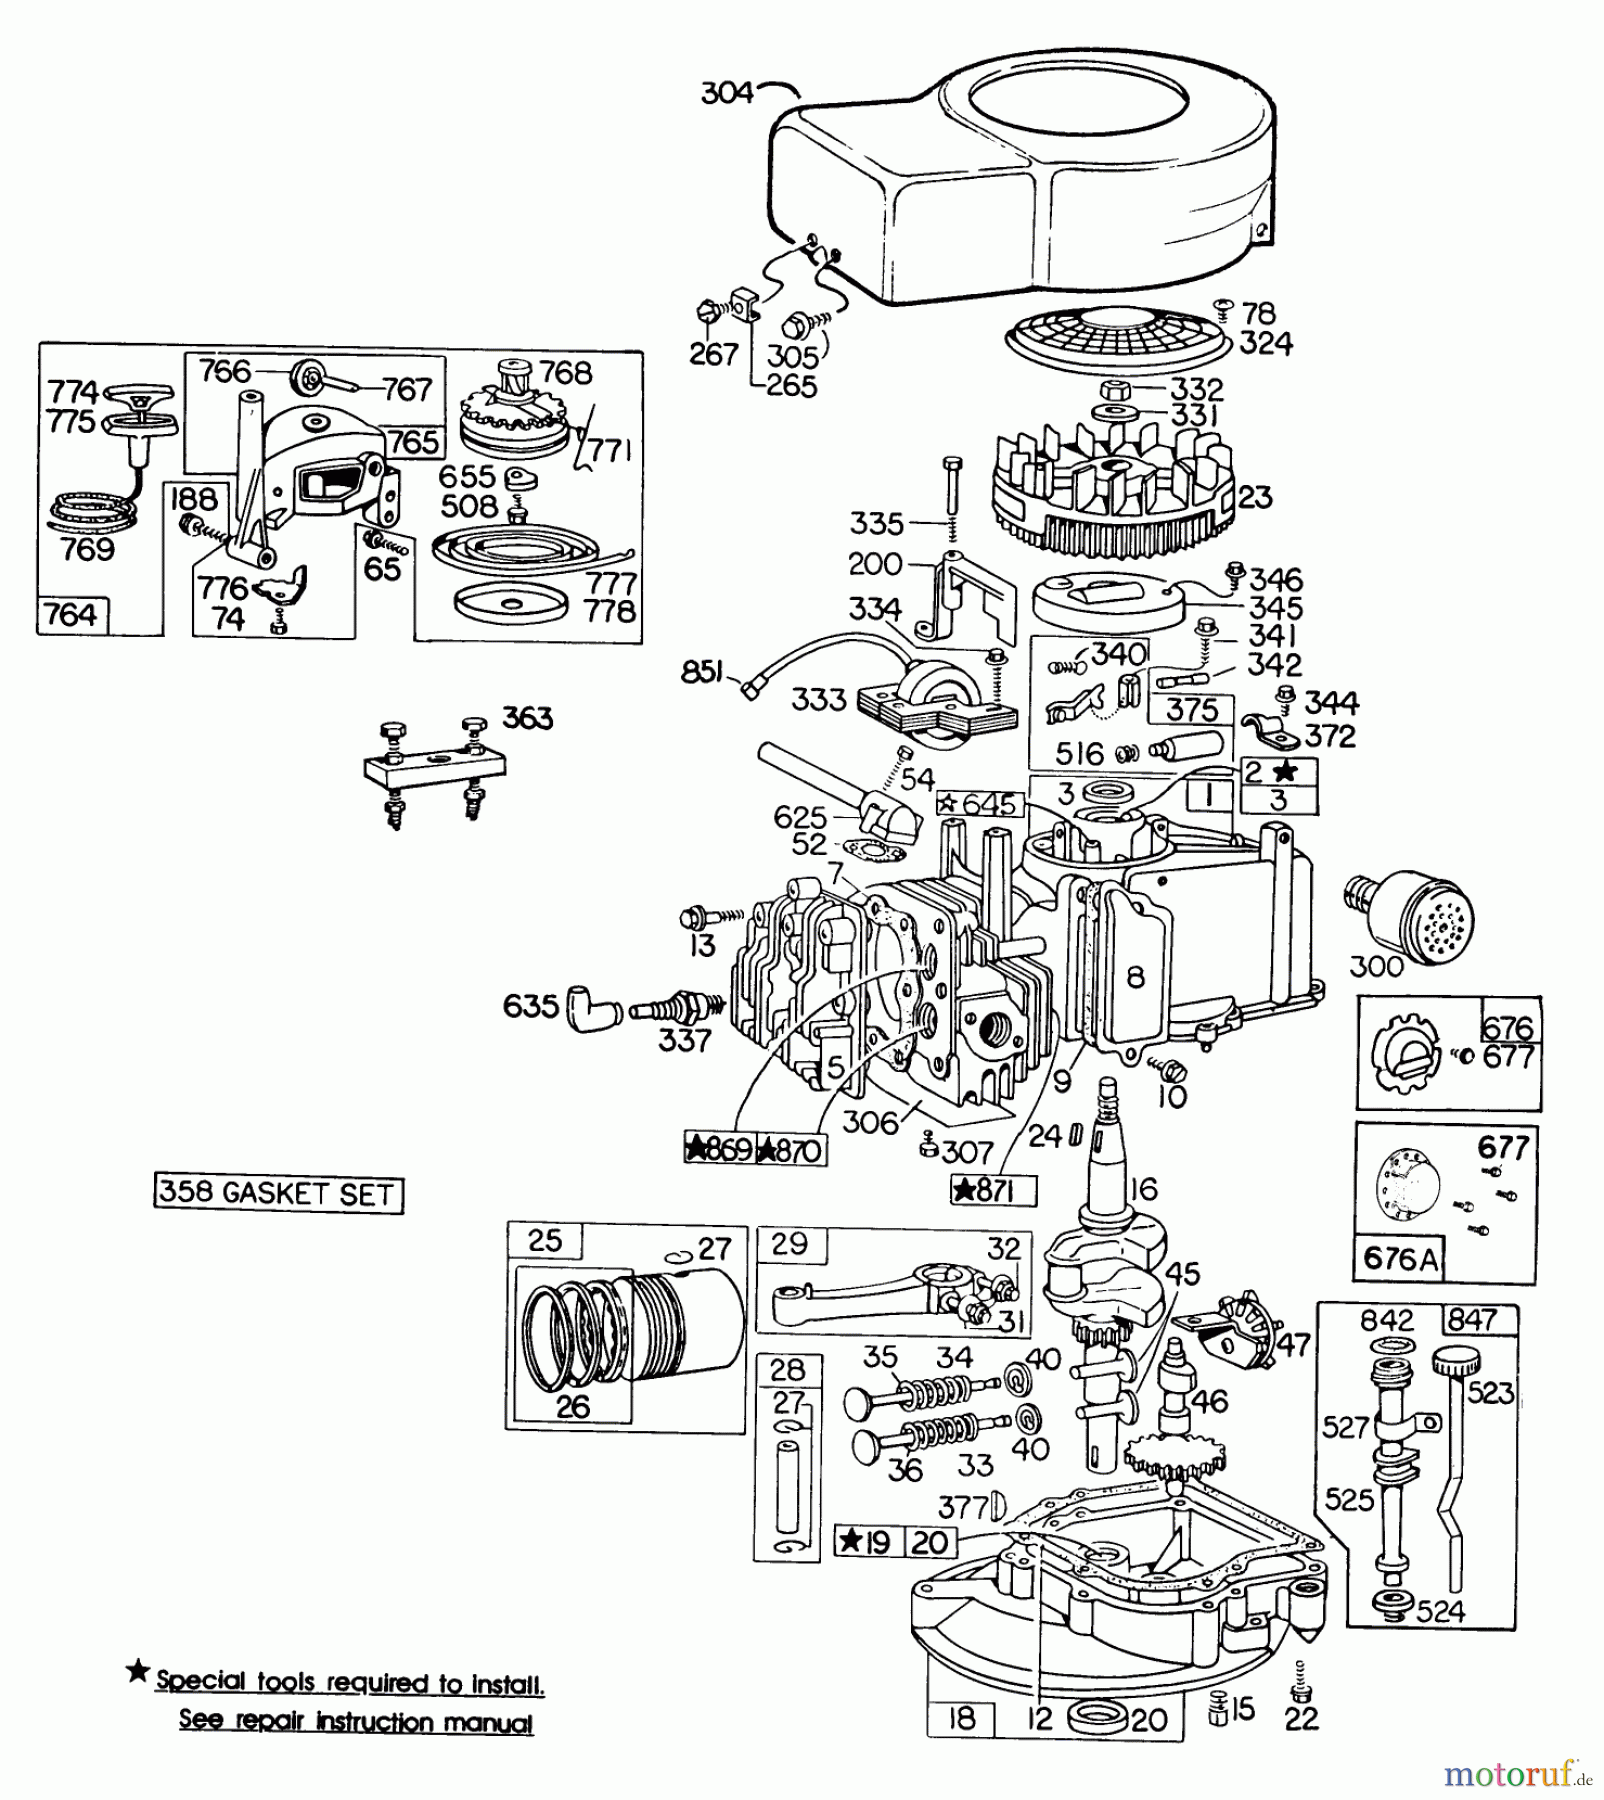  Toro Neu Mowers, Walk-Behind Seite 2 23400 - Toro Lawnmower, 1981 (1000001-1999999) ENGINE BRIGGS & STRATTON MODEL 110908-0492-01 #2